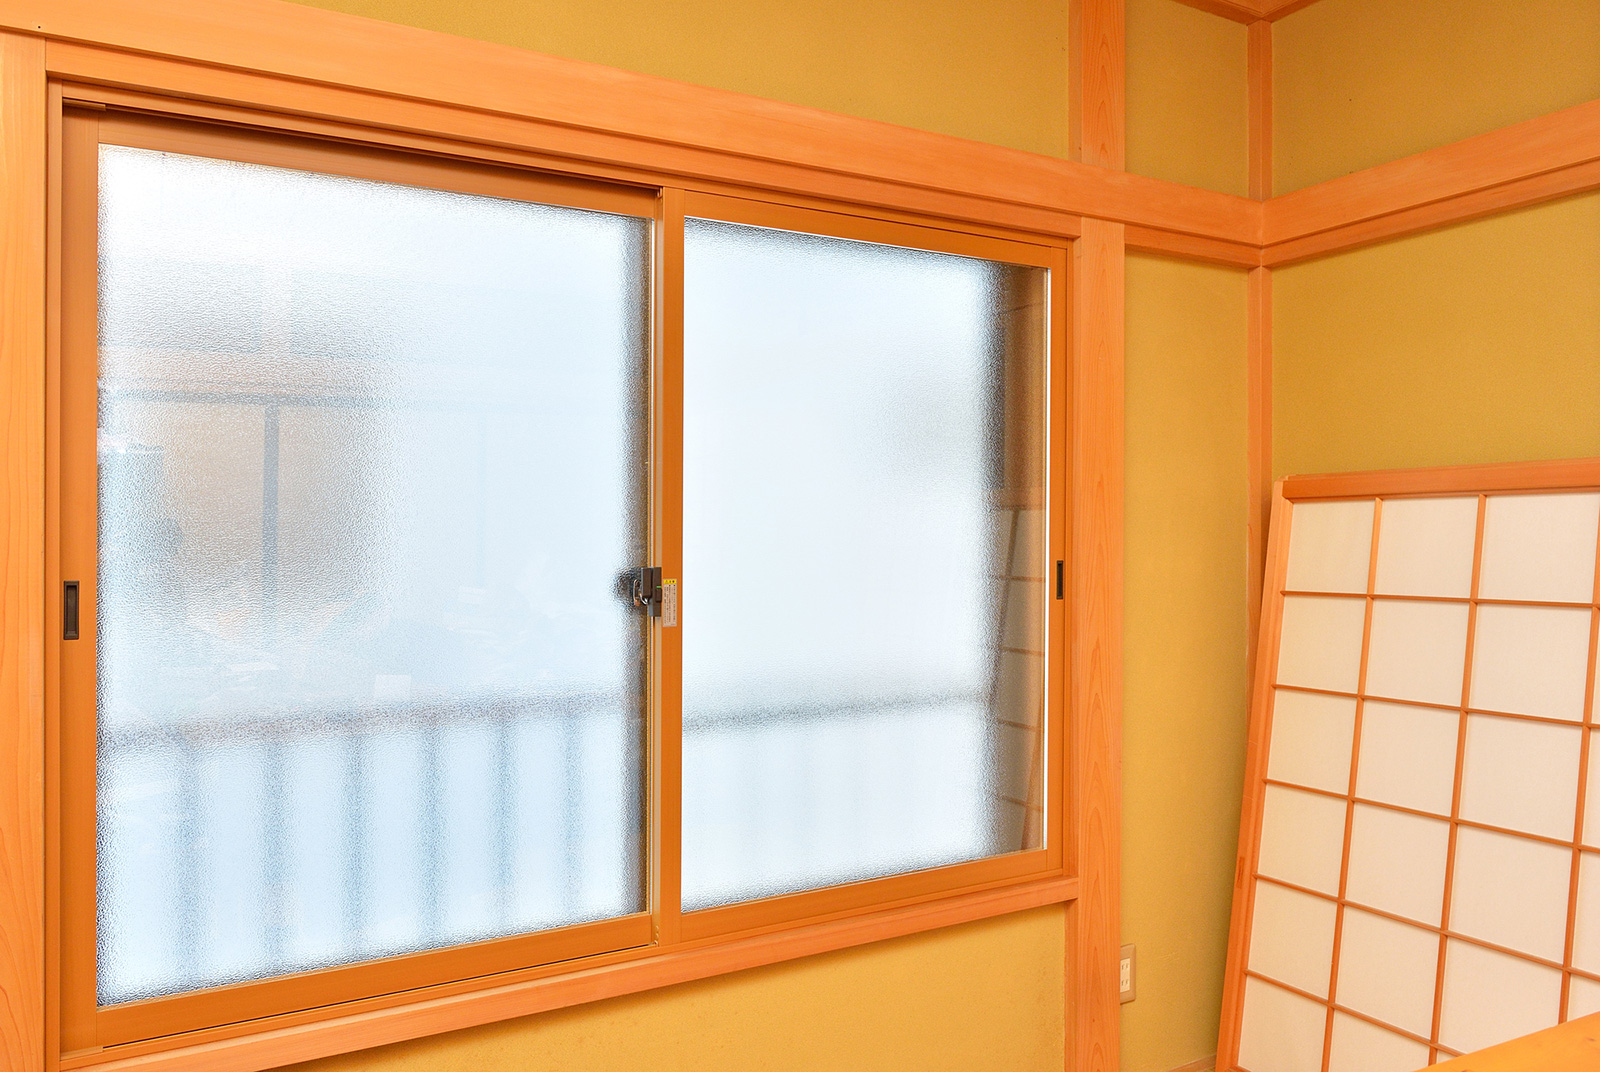 和室の既存ガラスサッシ窓に、内窓（複層ガラス+樹脂サッシ）を追加設置の工事リフォーム